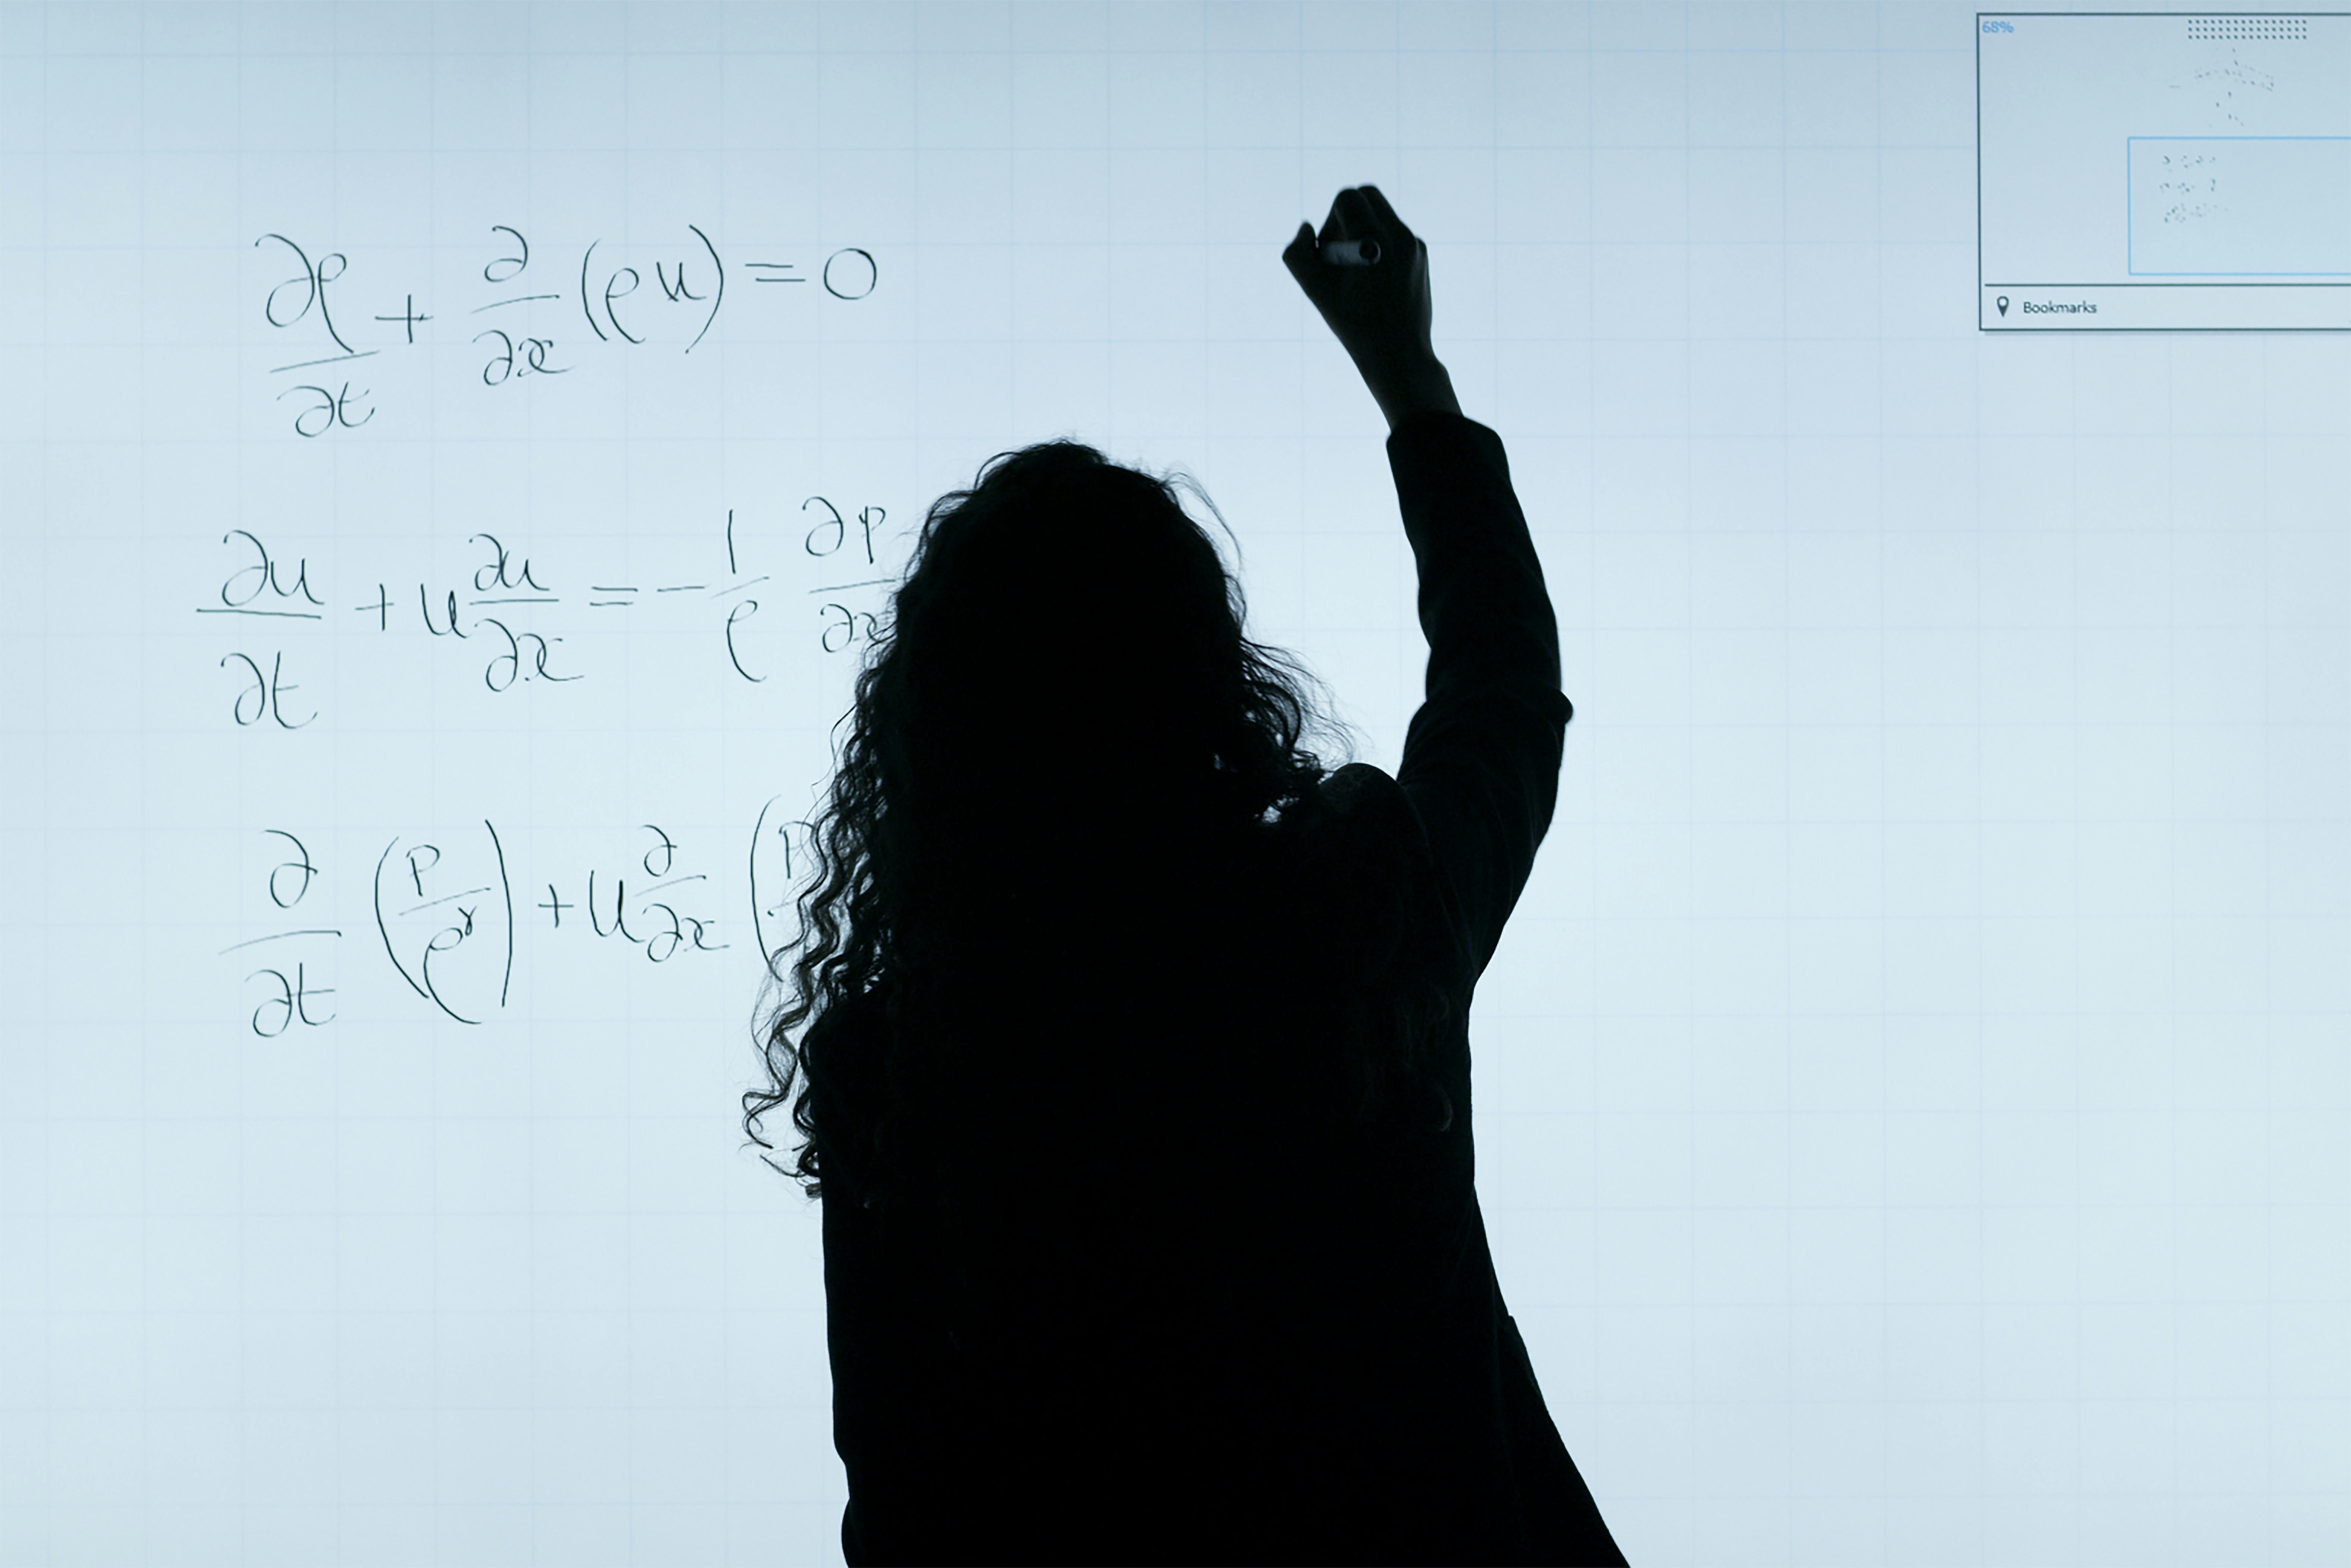 Silhouette d'une personne écrivant des équations mathématiques complexes sur un tableau transparent, évoquant un environnement d'apprentissage ou de recherche sérieux.